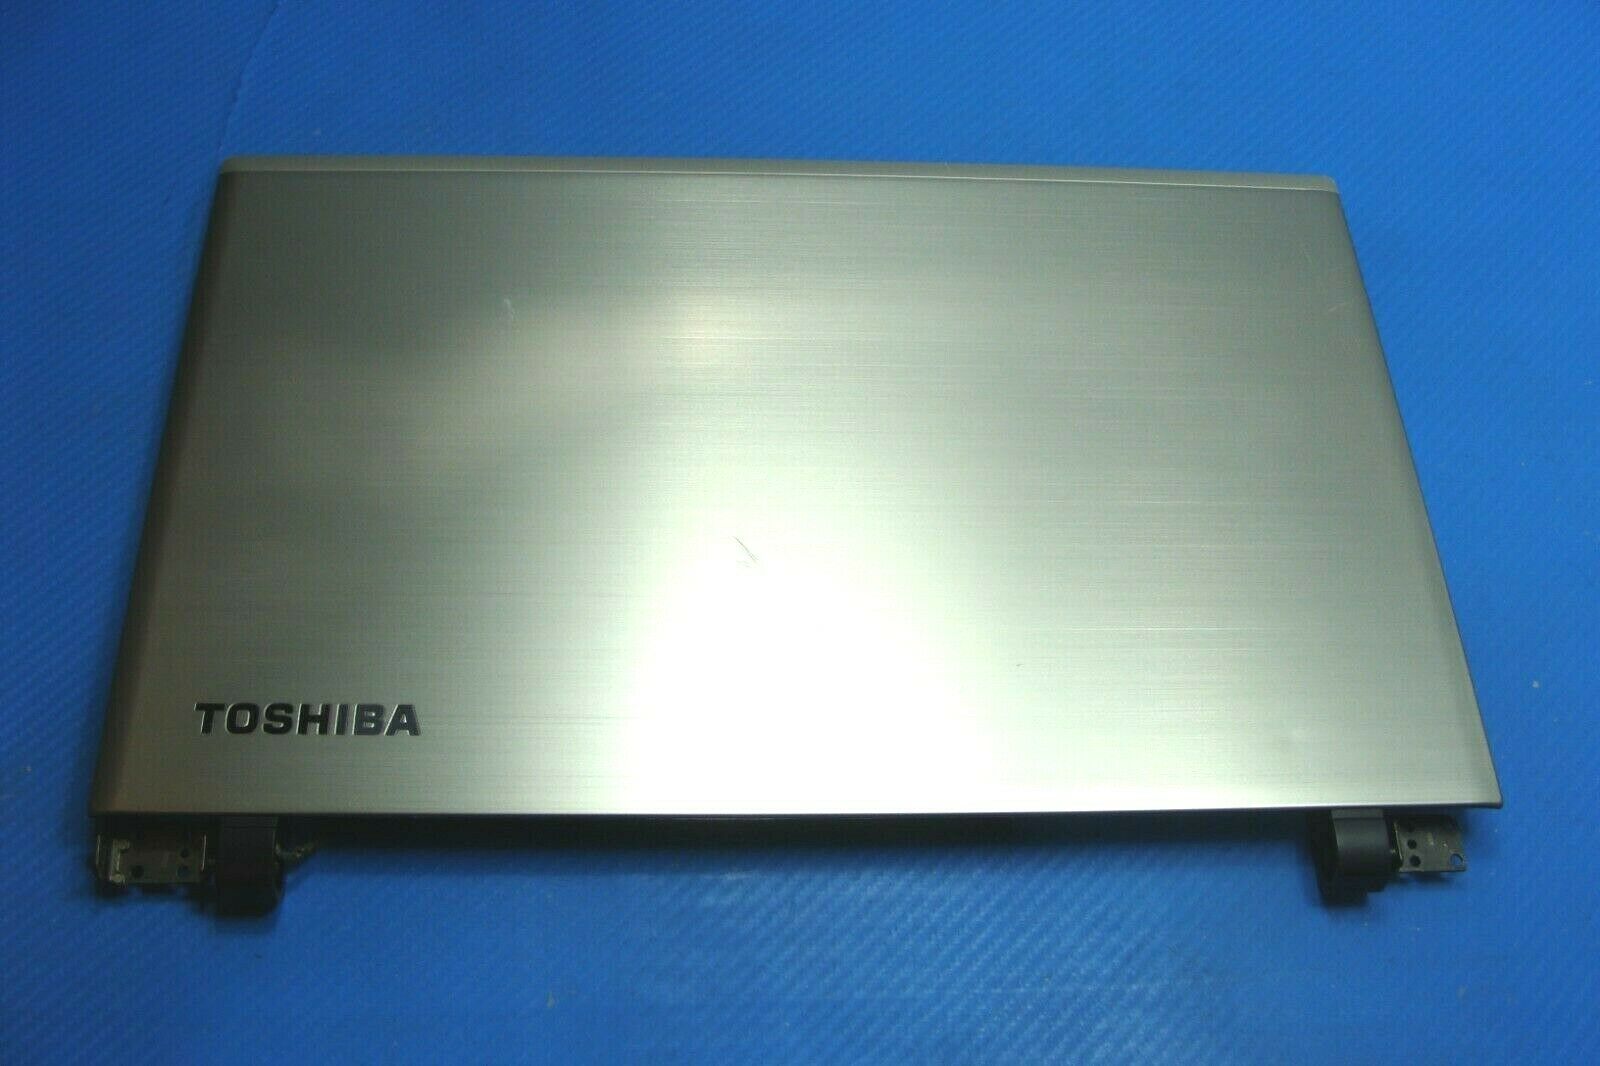 Toshiba Satellite 15.6